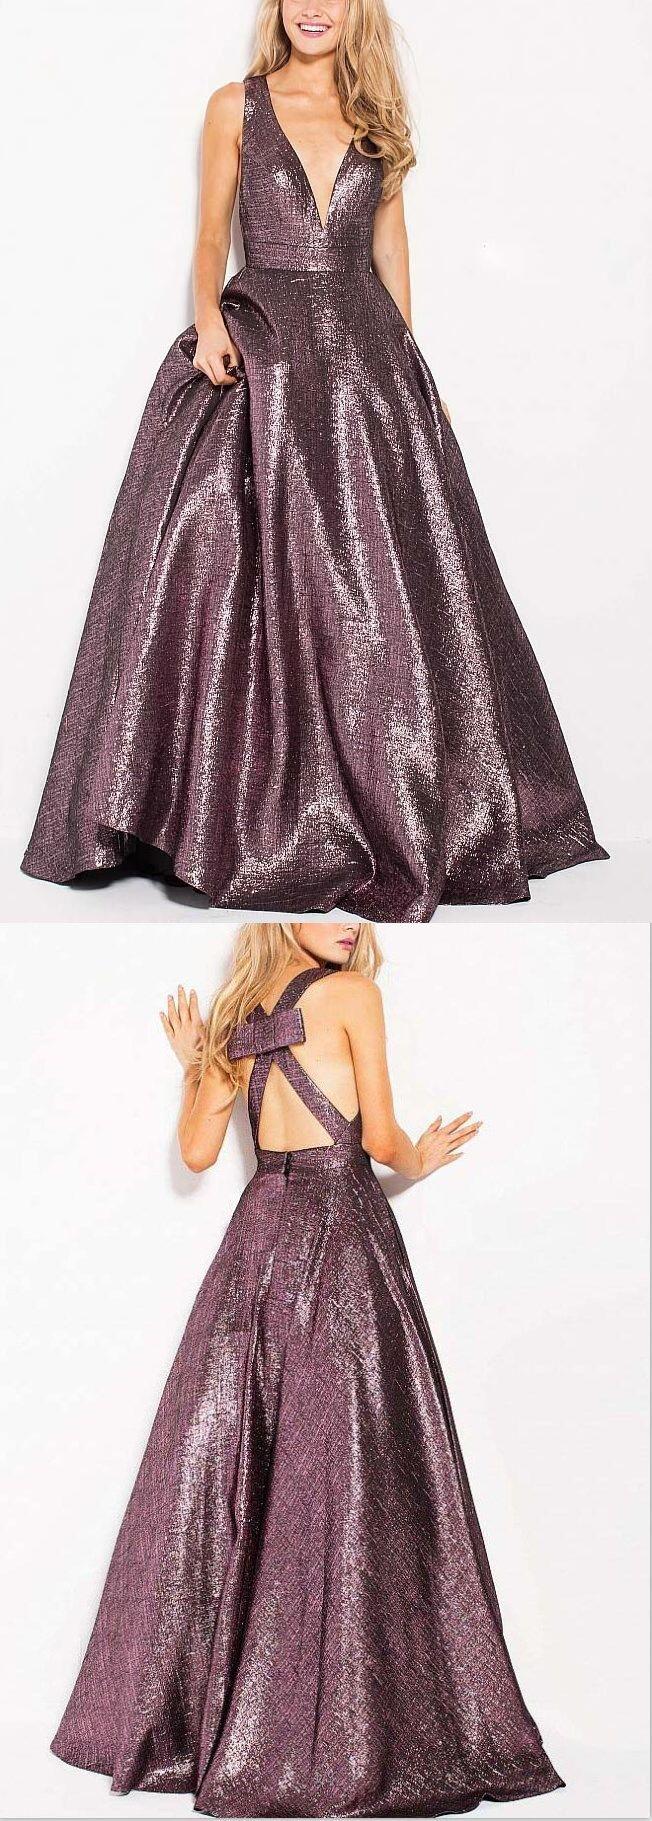 زفاف - Deep V Neck Sexy Long Sparkly Unique Design Prom Dresses, Evening Dress, Fashion Gown, PD0480